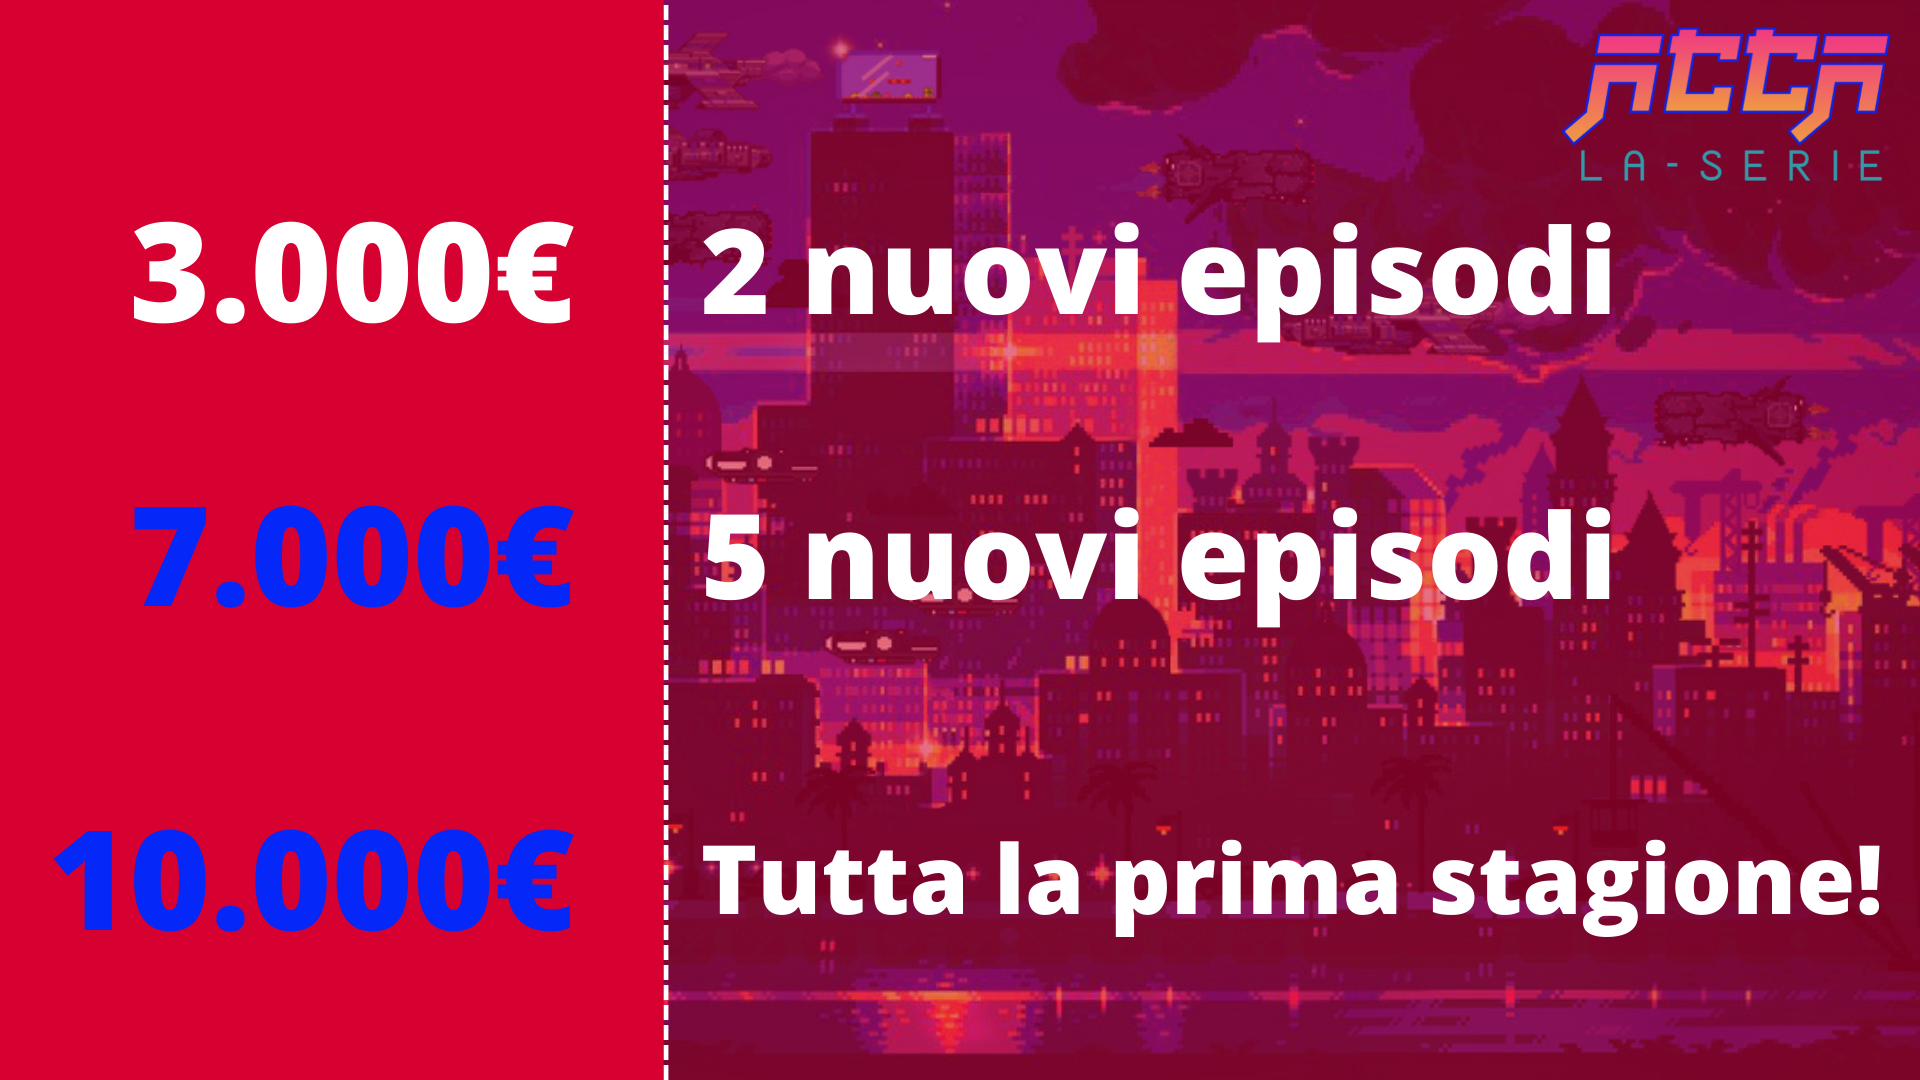 Dati per traguardi raggiunti con raccolta: 3000€, 2 nuovi episodi. 7000€ 5 nuovi episodi. 10000€, tutta la stagione!